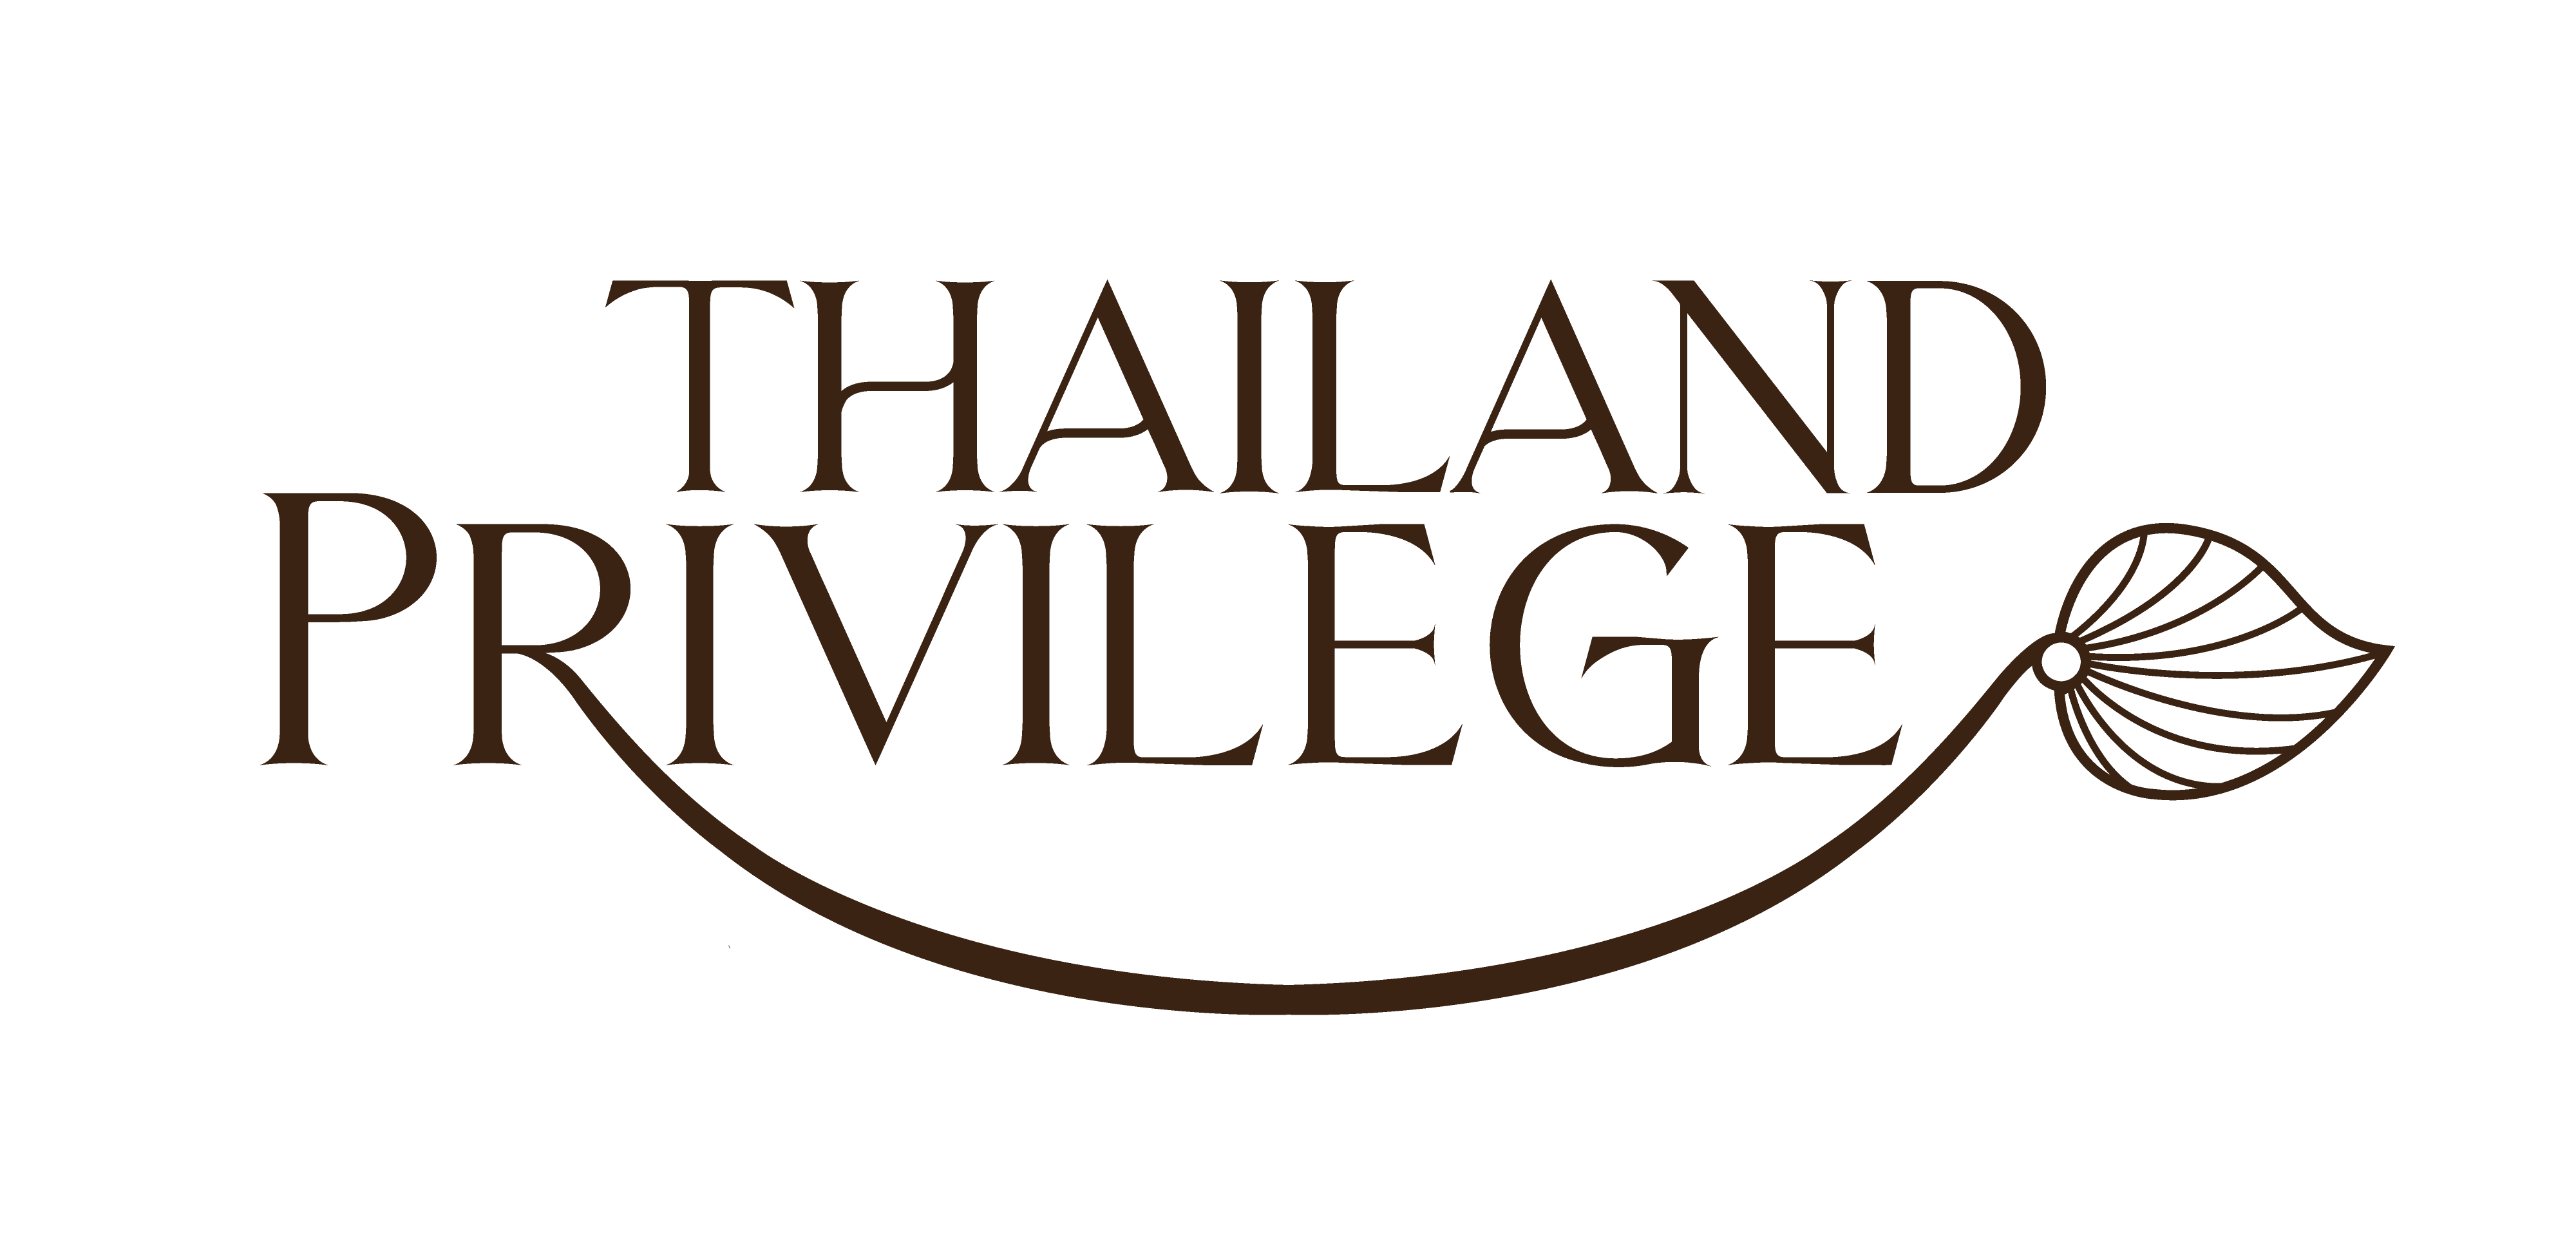 Thailand Privilege Card Co., Ltd.